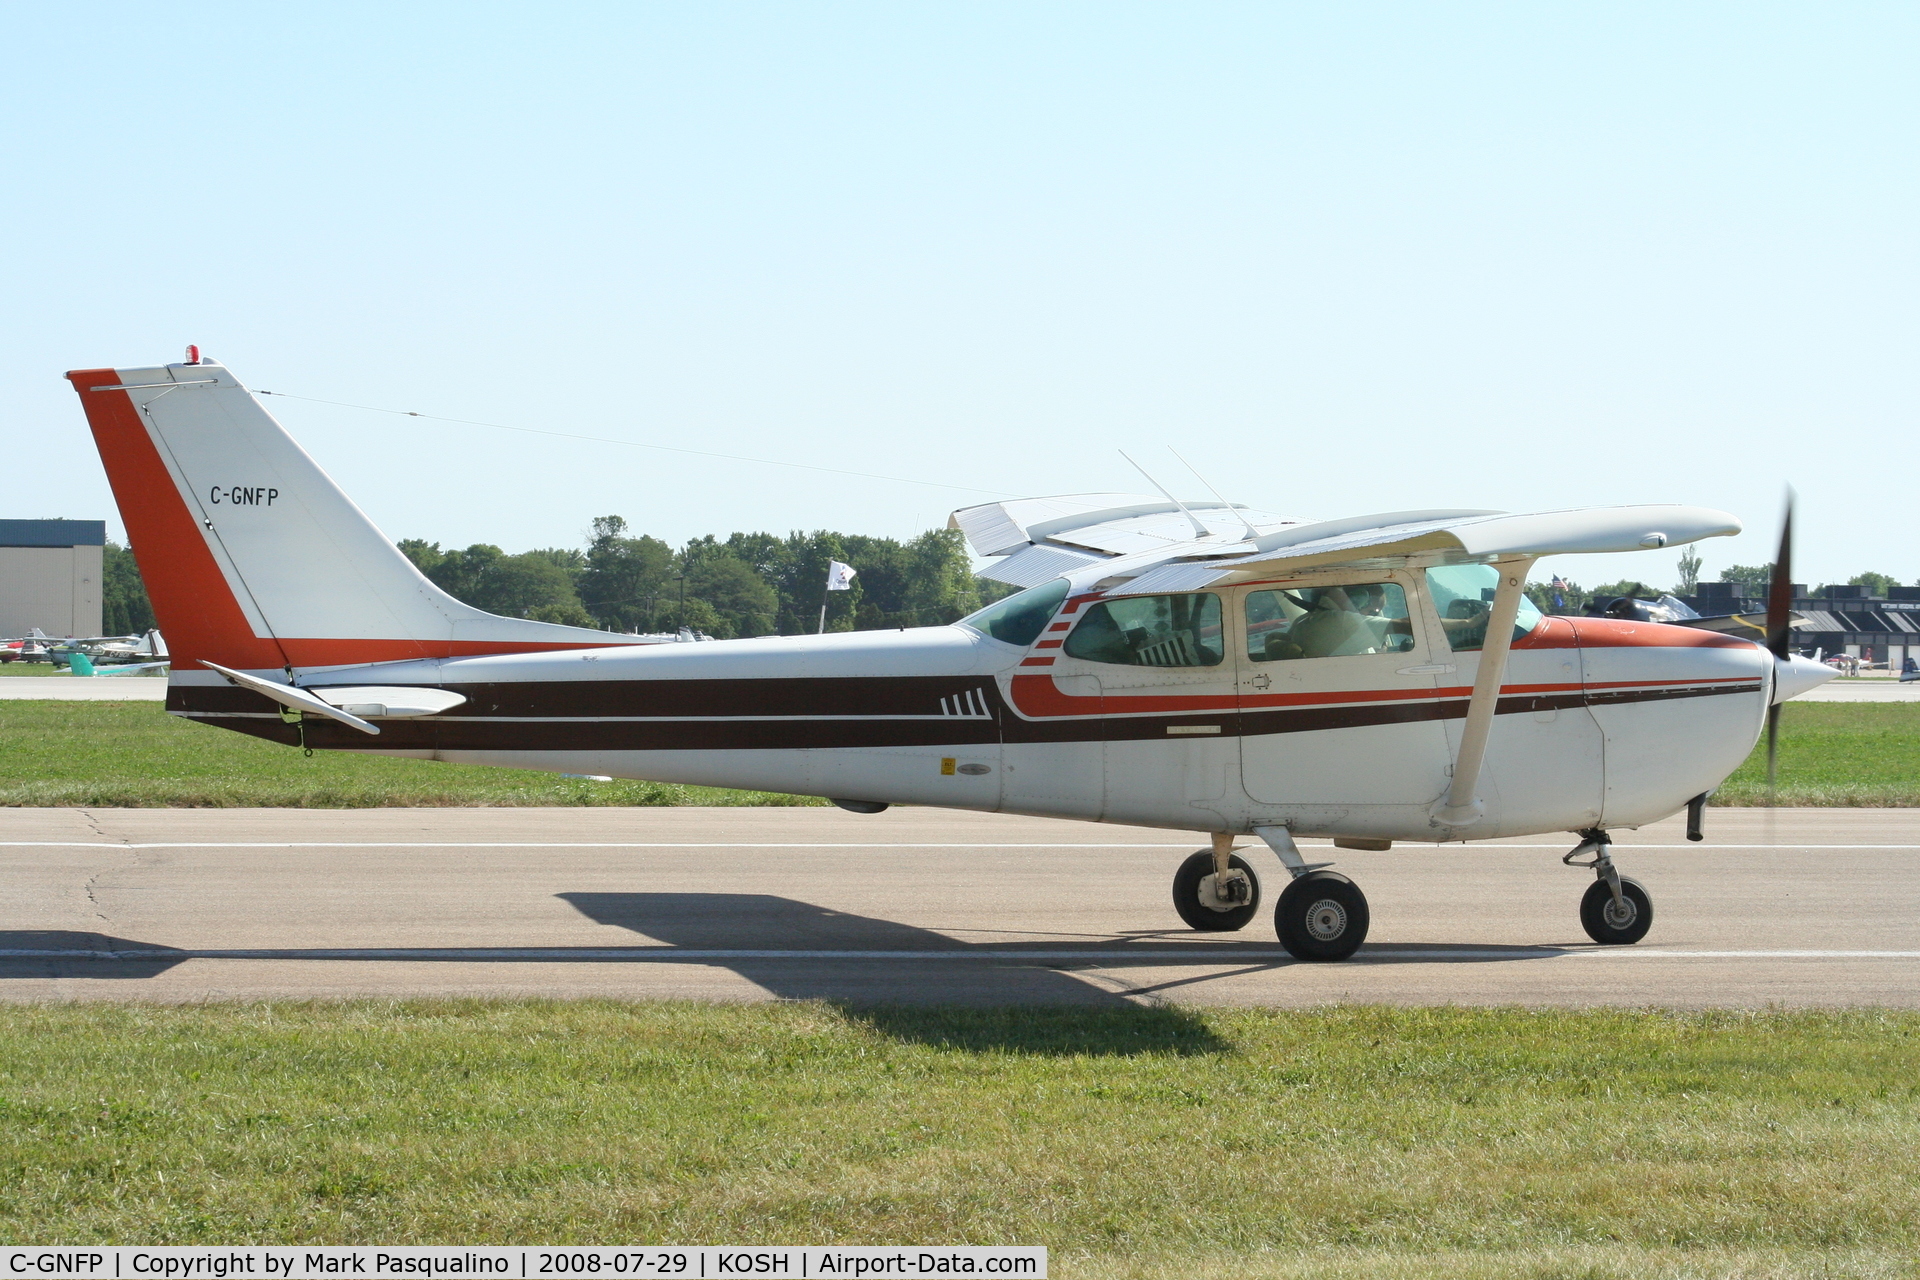 C-GNFP, 1969 Cessna 172K Skyhawk C/N 17257712, Cessna 172